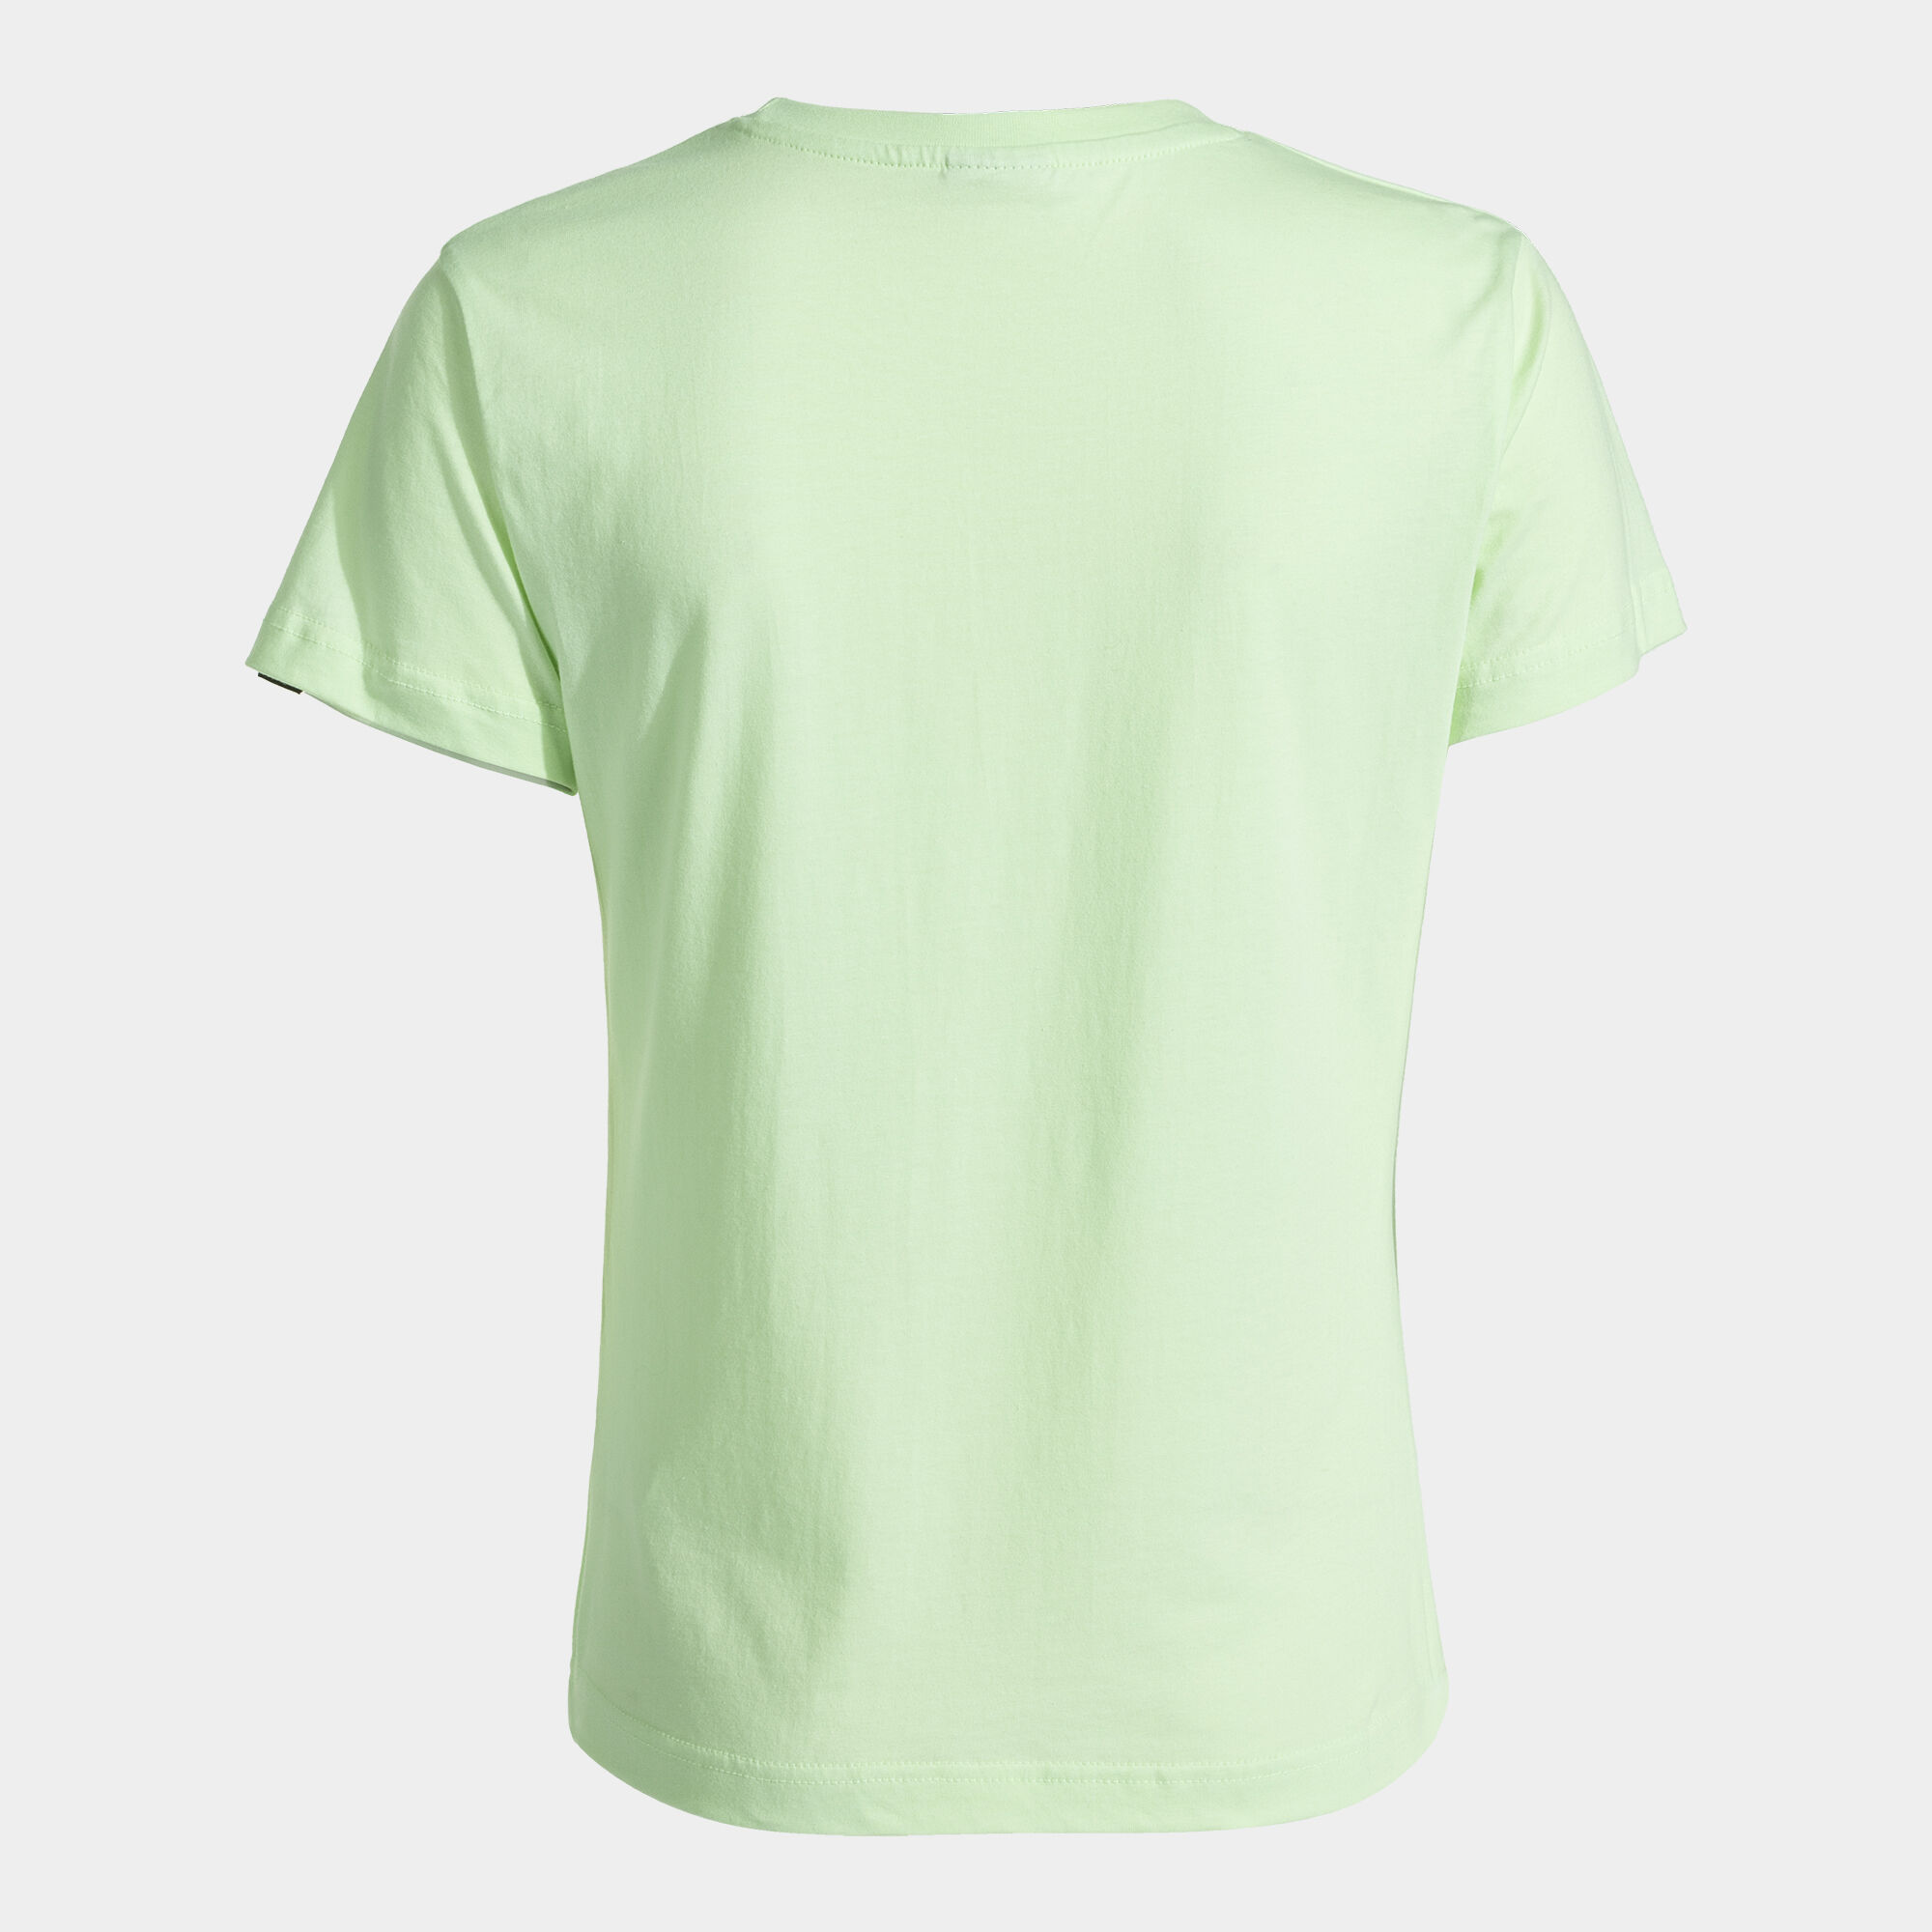 Camiseta manga corta mujer Desert verde